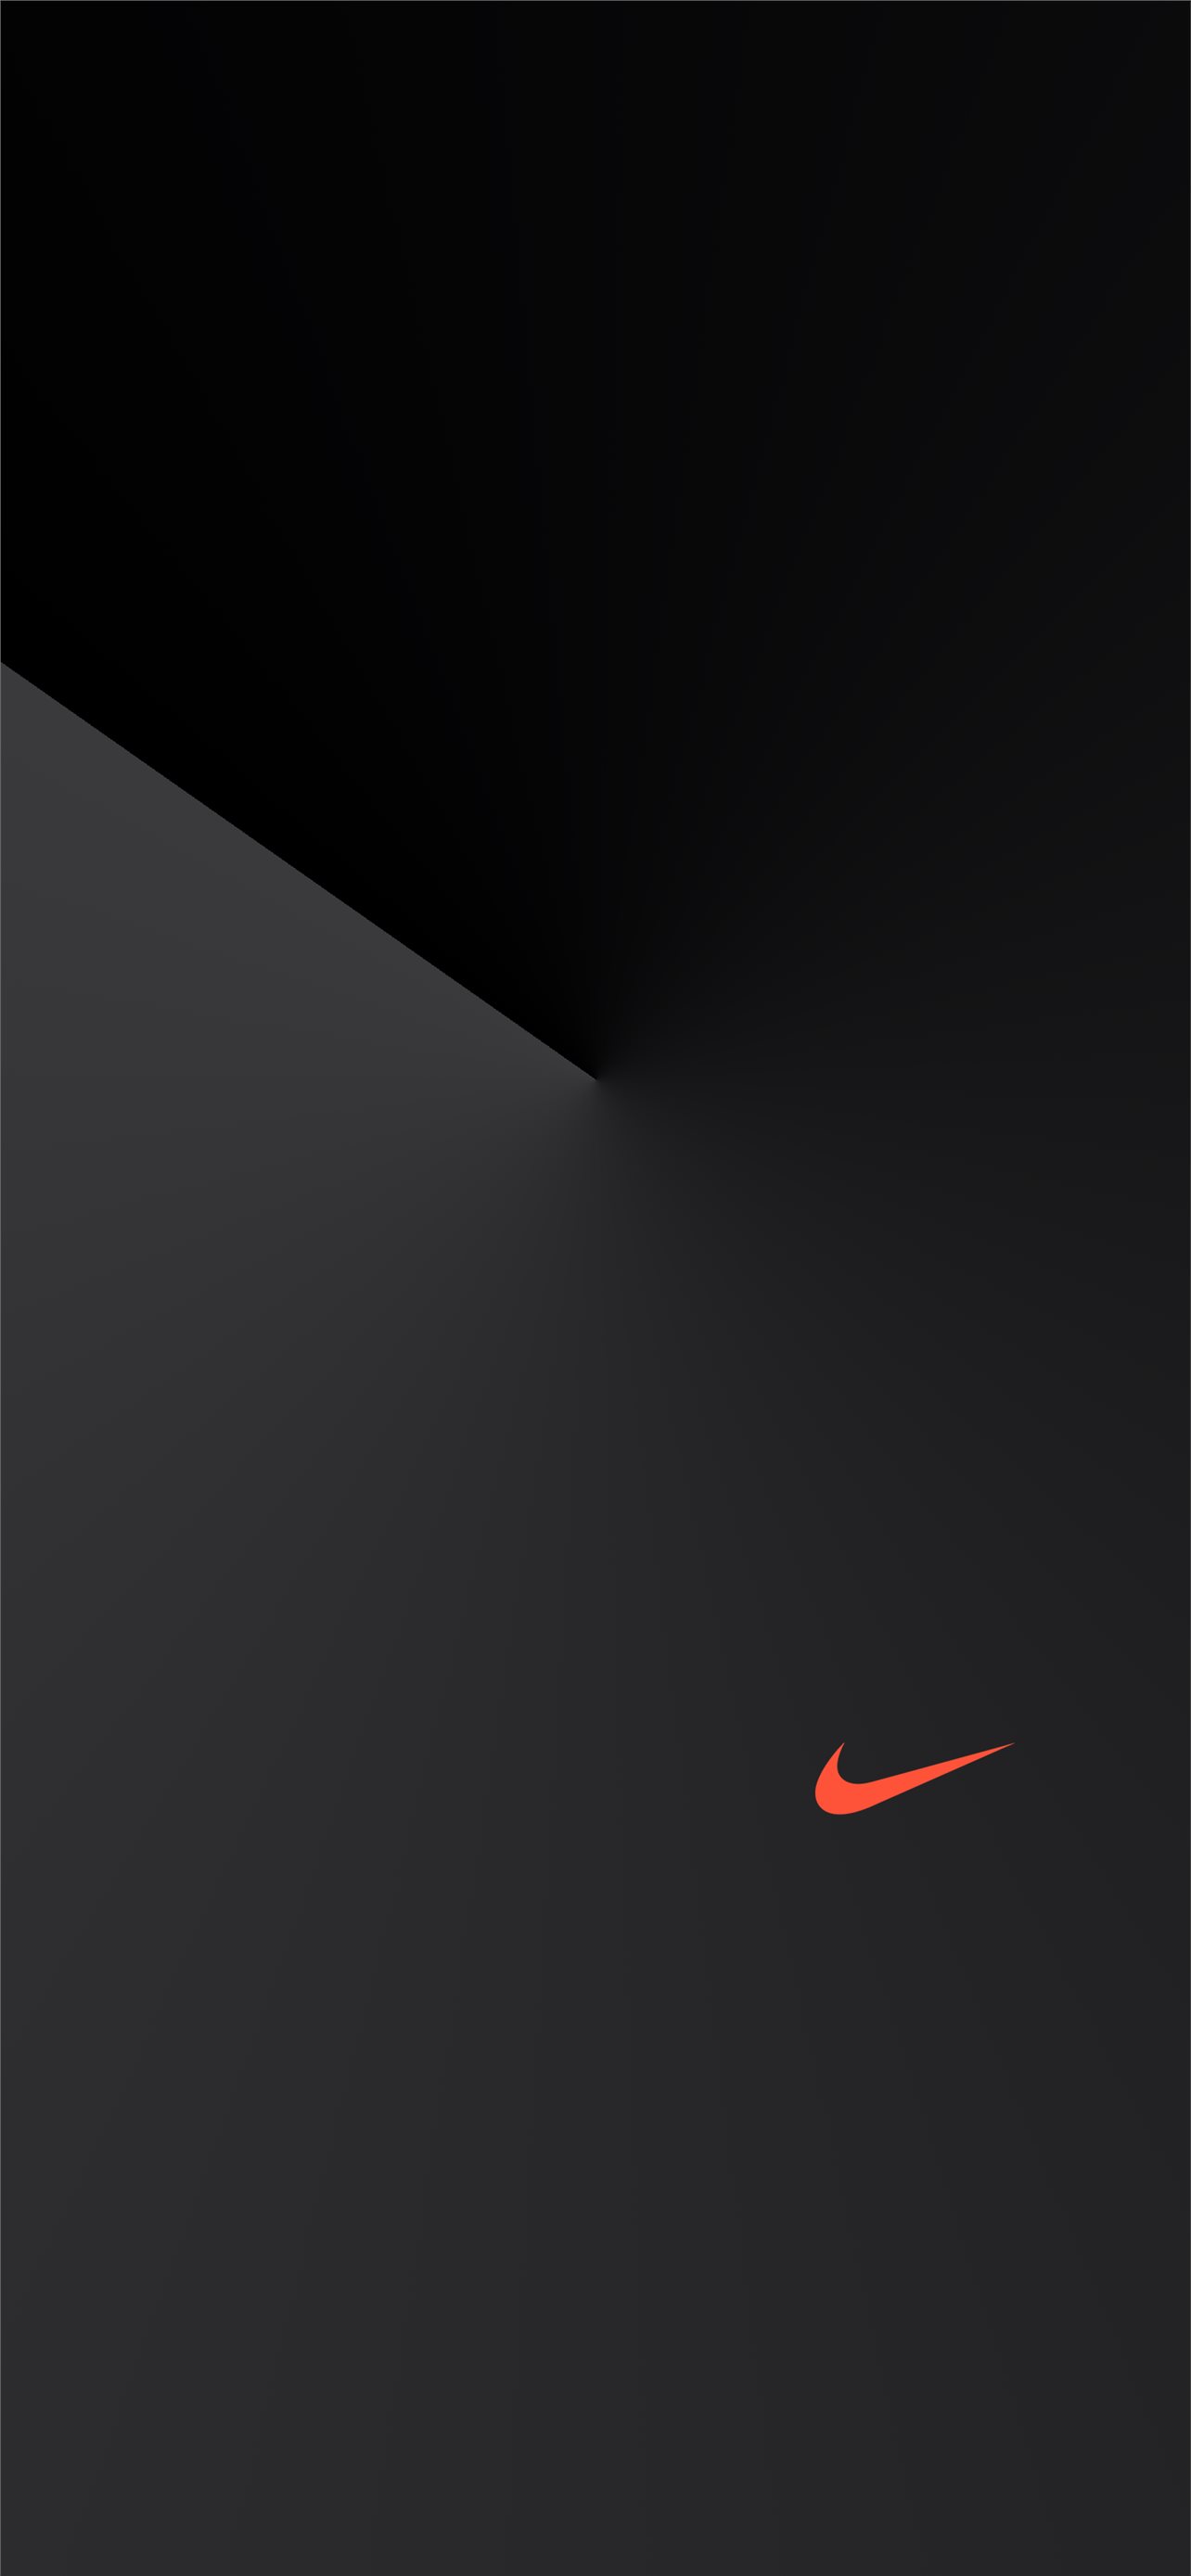 Simple Nike Wallpapers  Top Những Hình Ảnh Đẹp